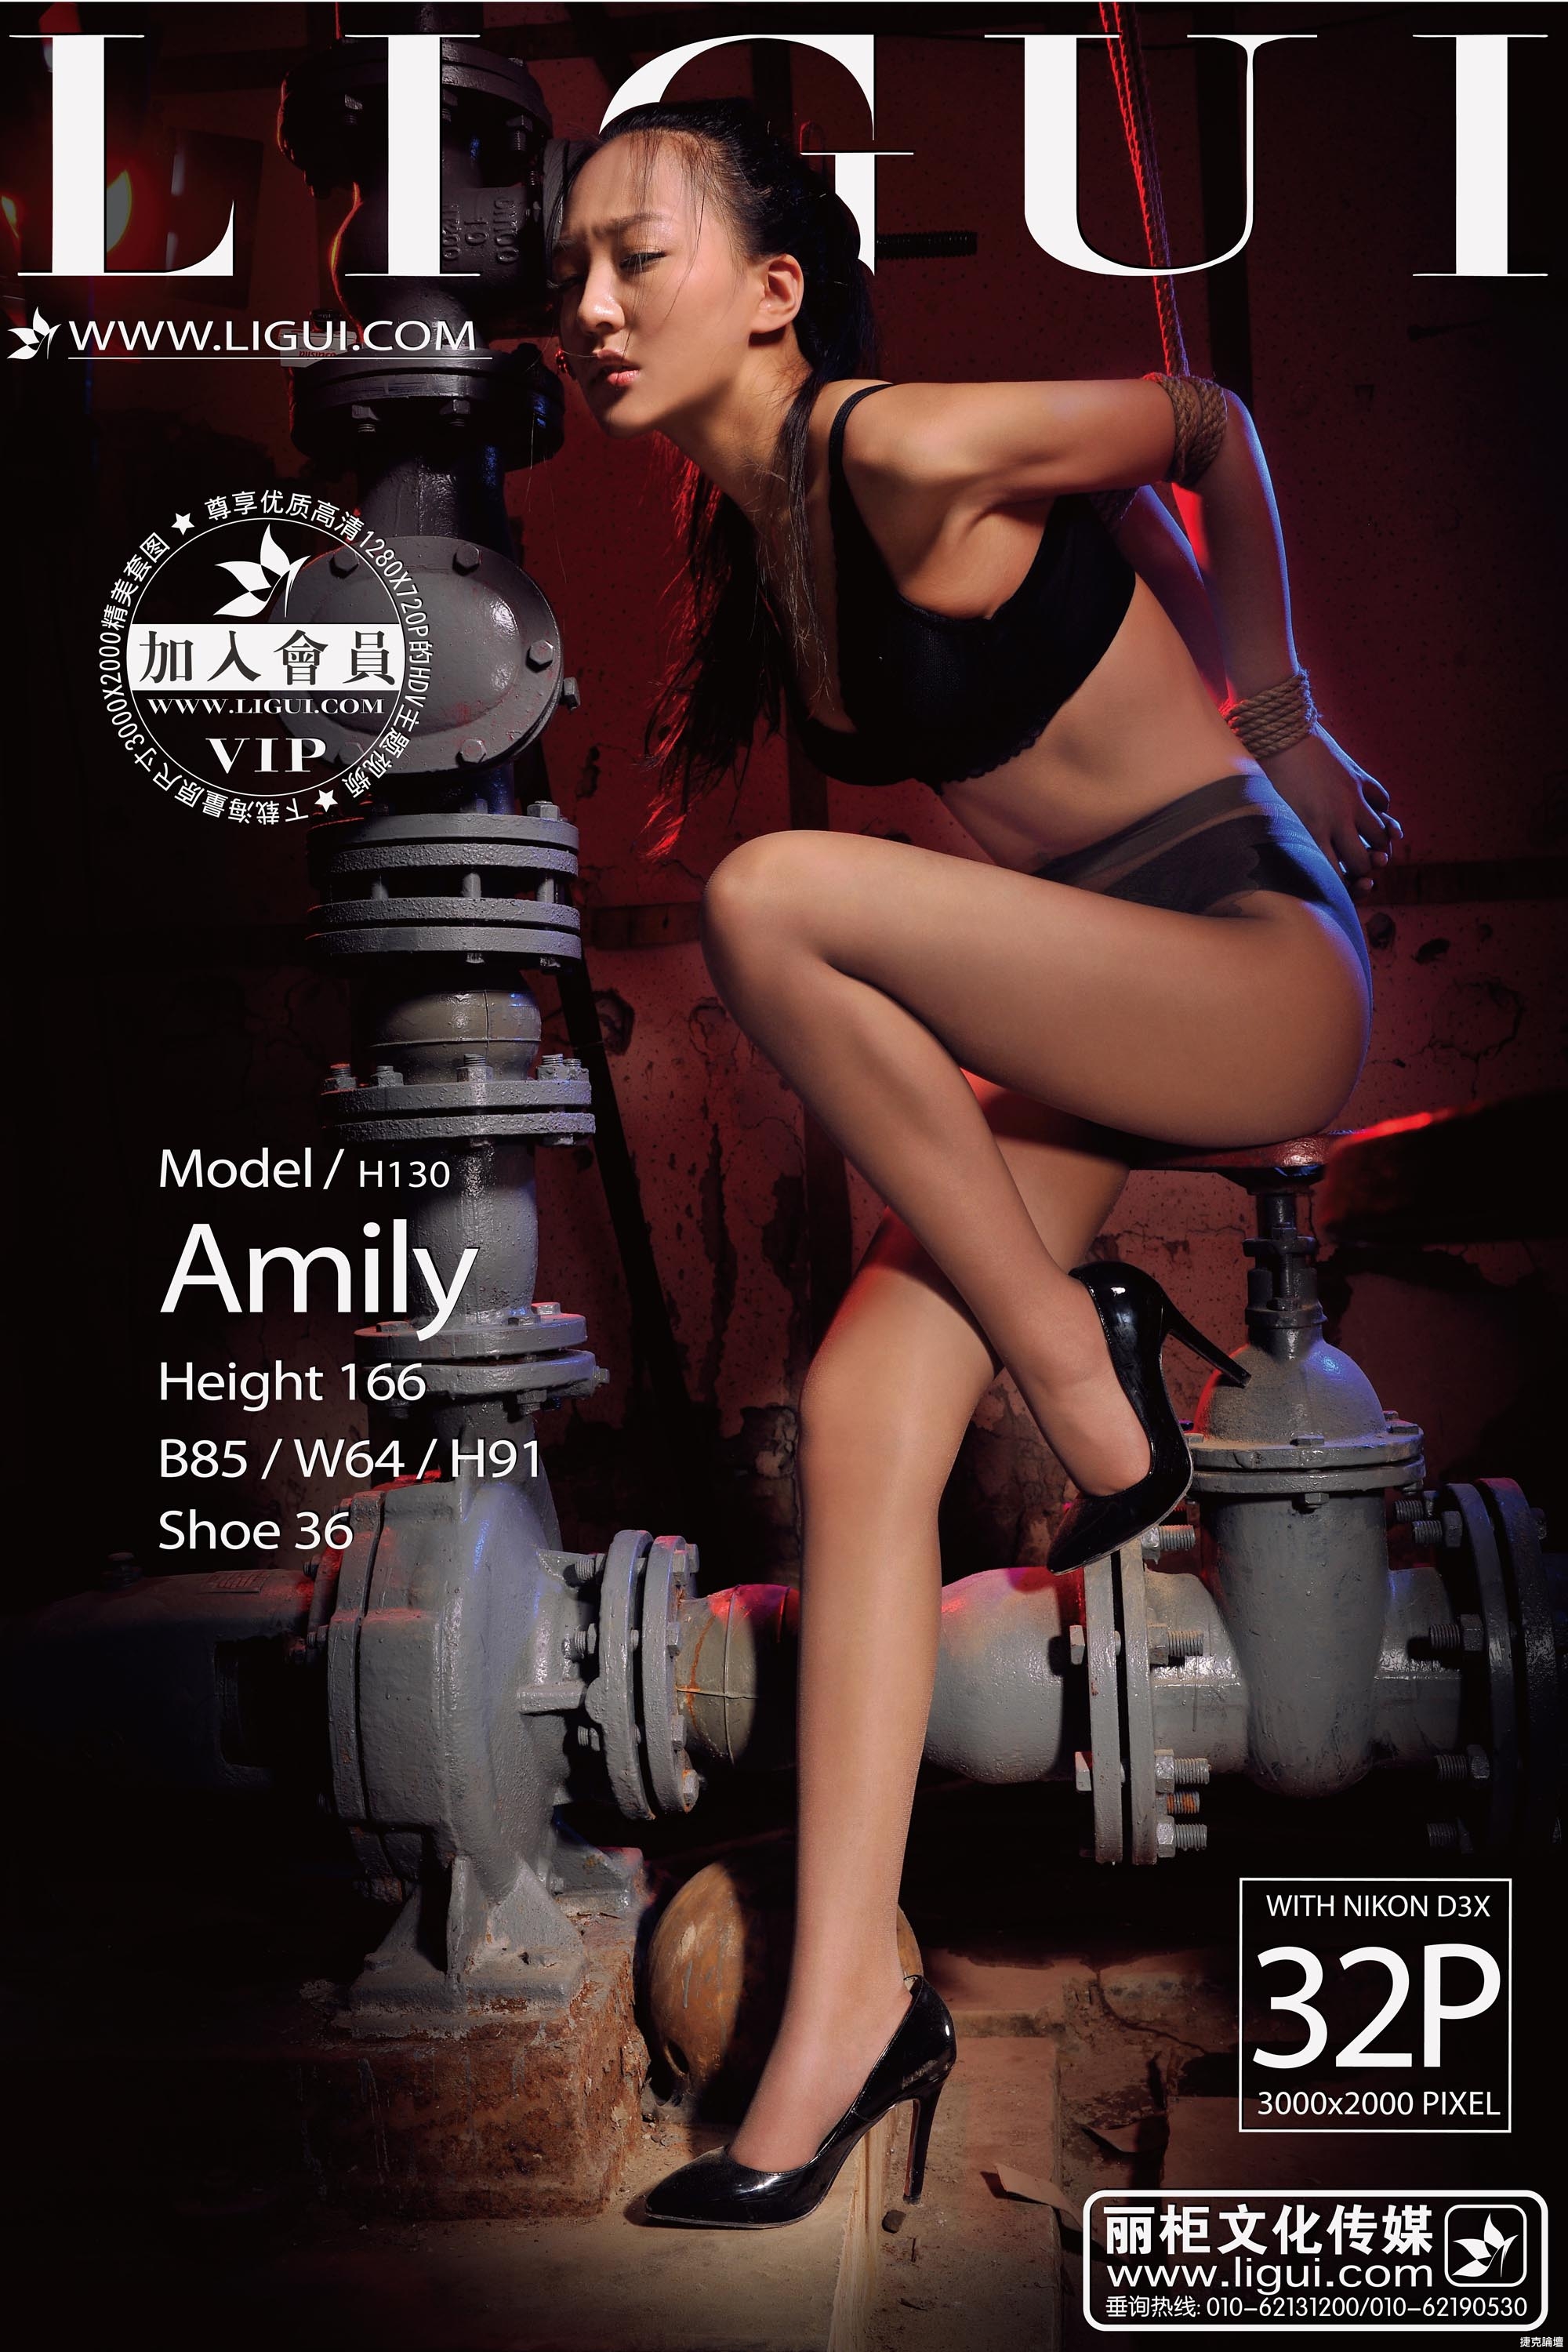 【麗櫃緊縛魅影系列-Amily】 被綁的女秘書肉絲美腿粉誘人【33P】 - 貼圖 - 絲襪美腿 -